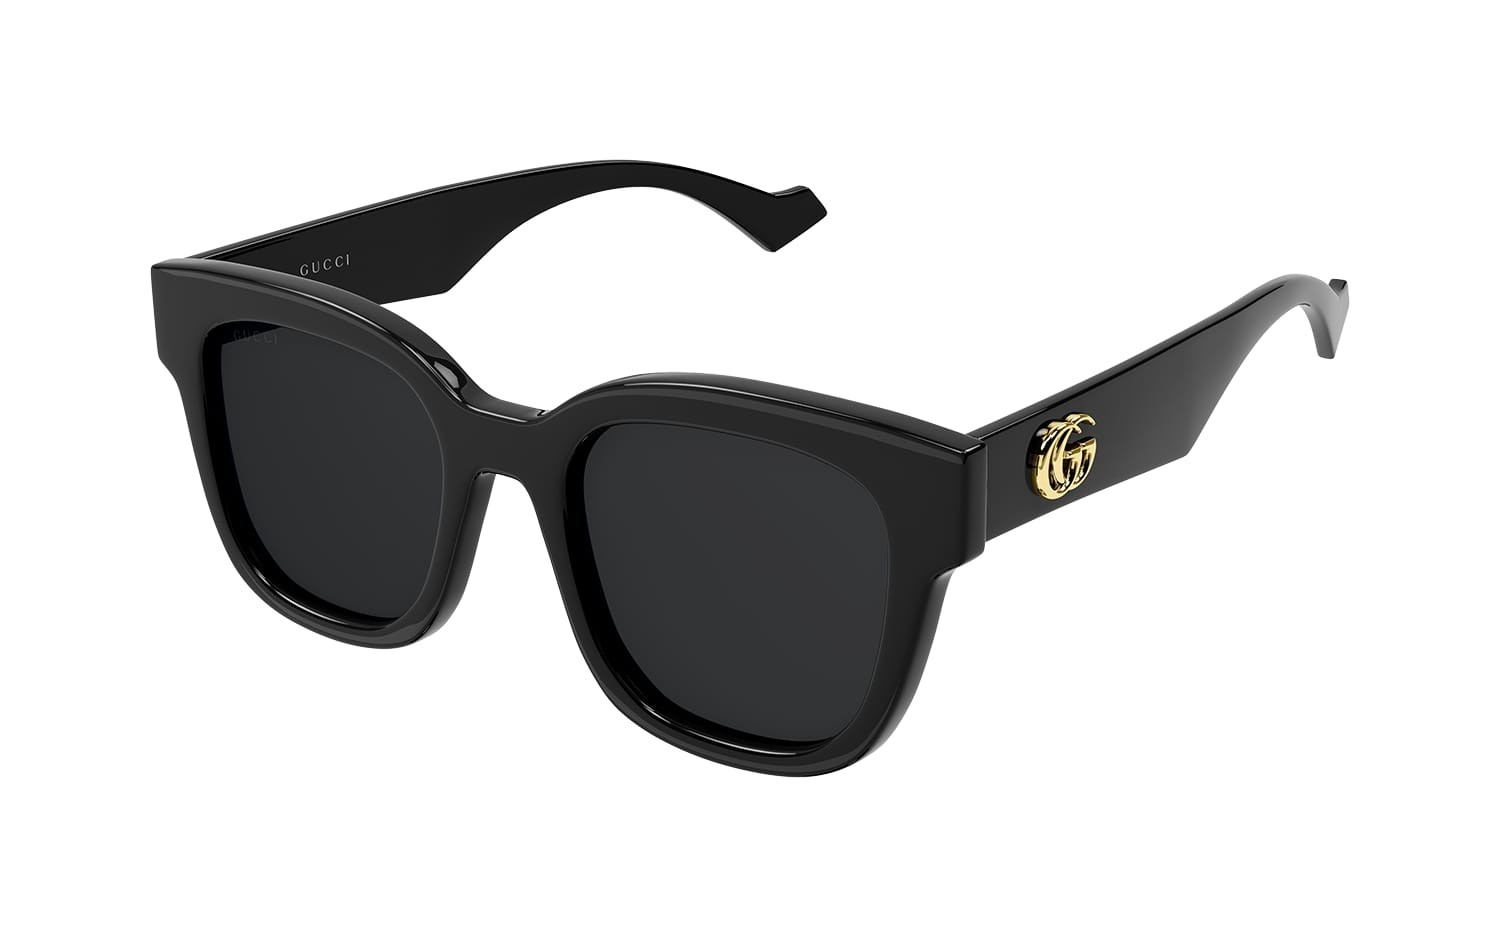 Óculos Solar Gucci - Tamanho 52